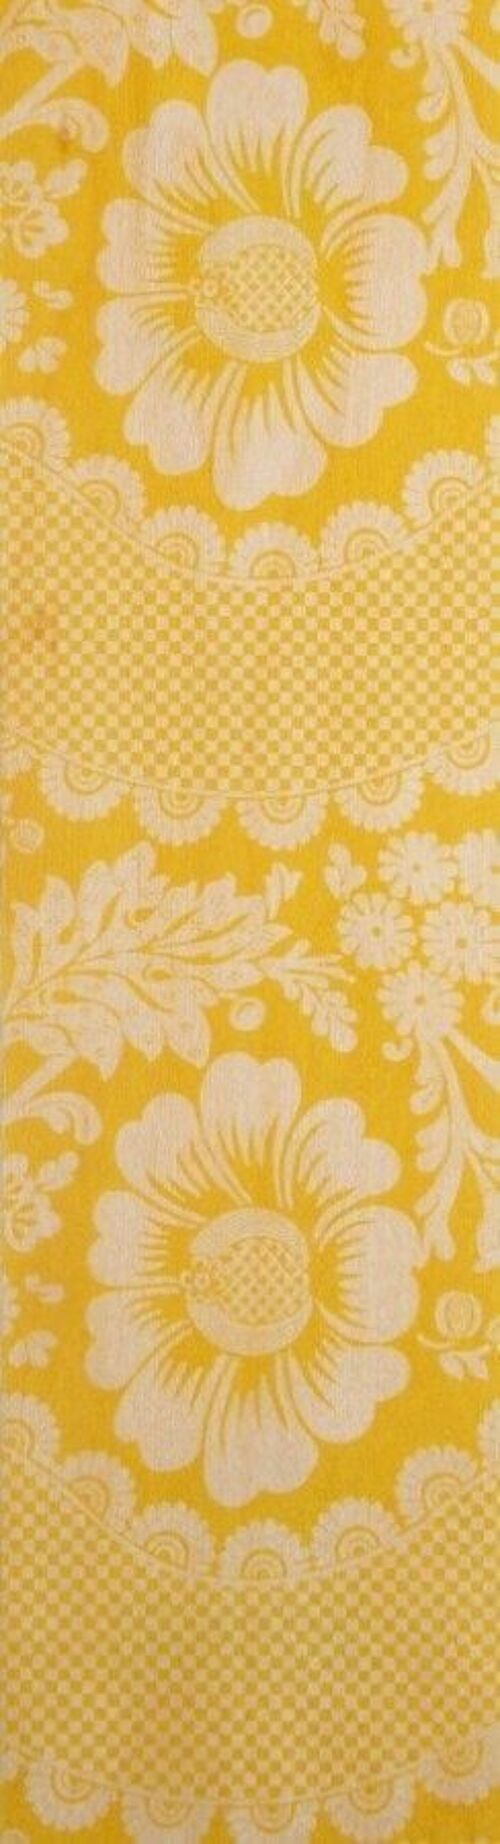 Marque-pages en bois - toile de jouy fleurs jaune